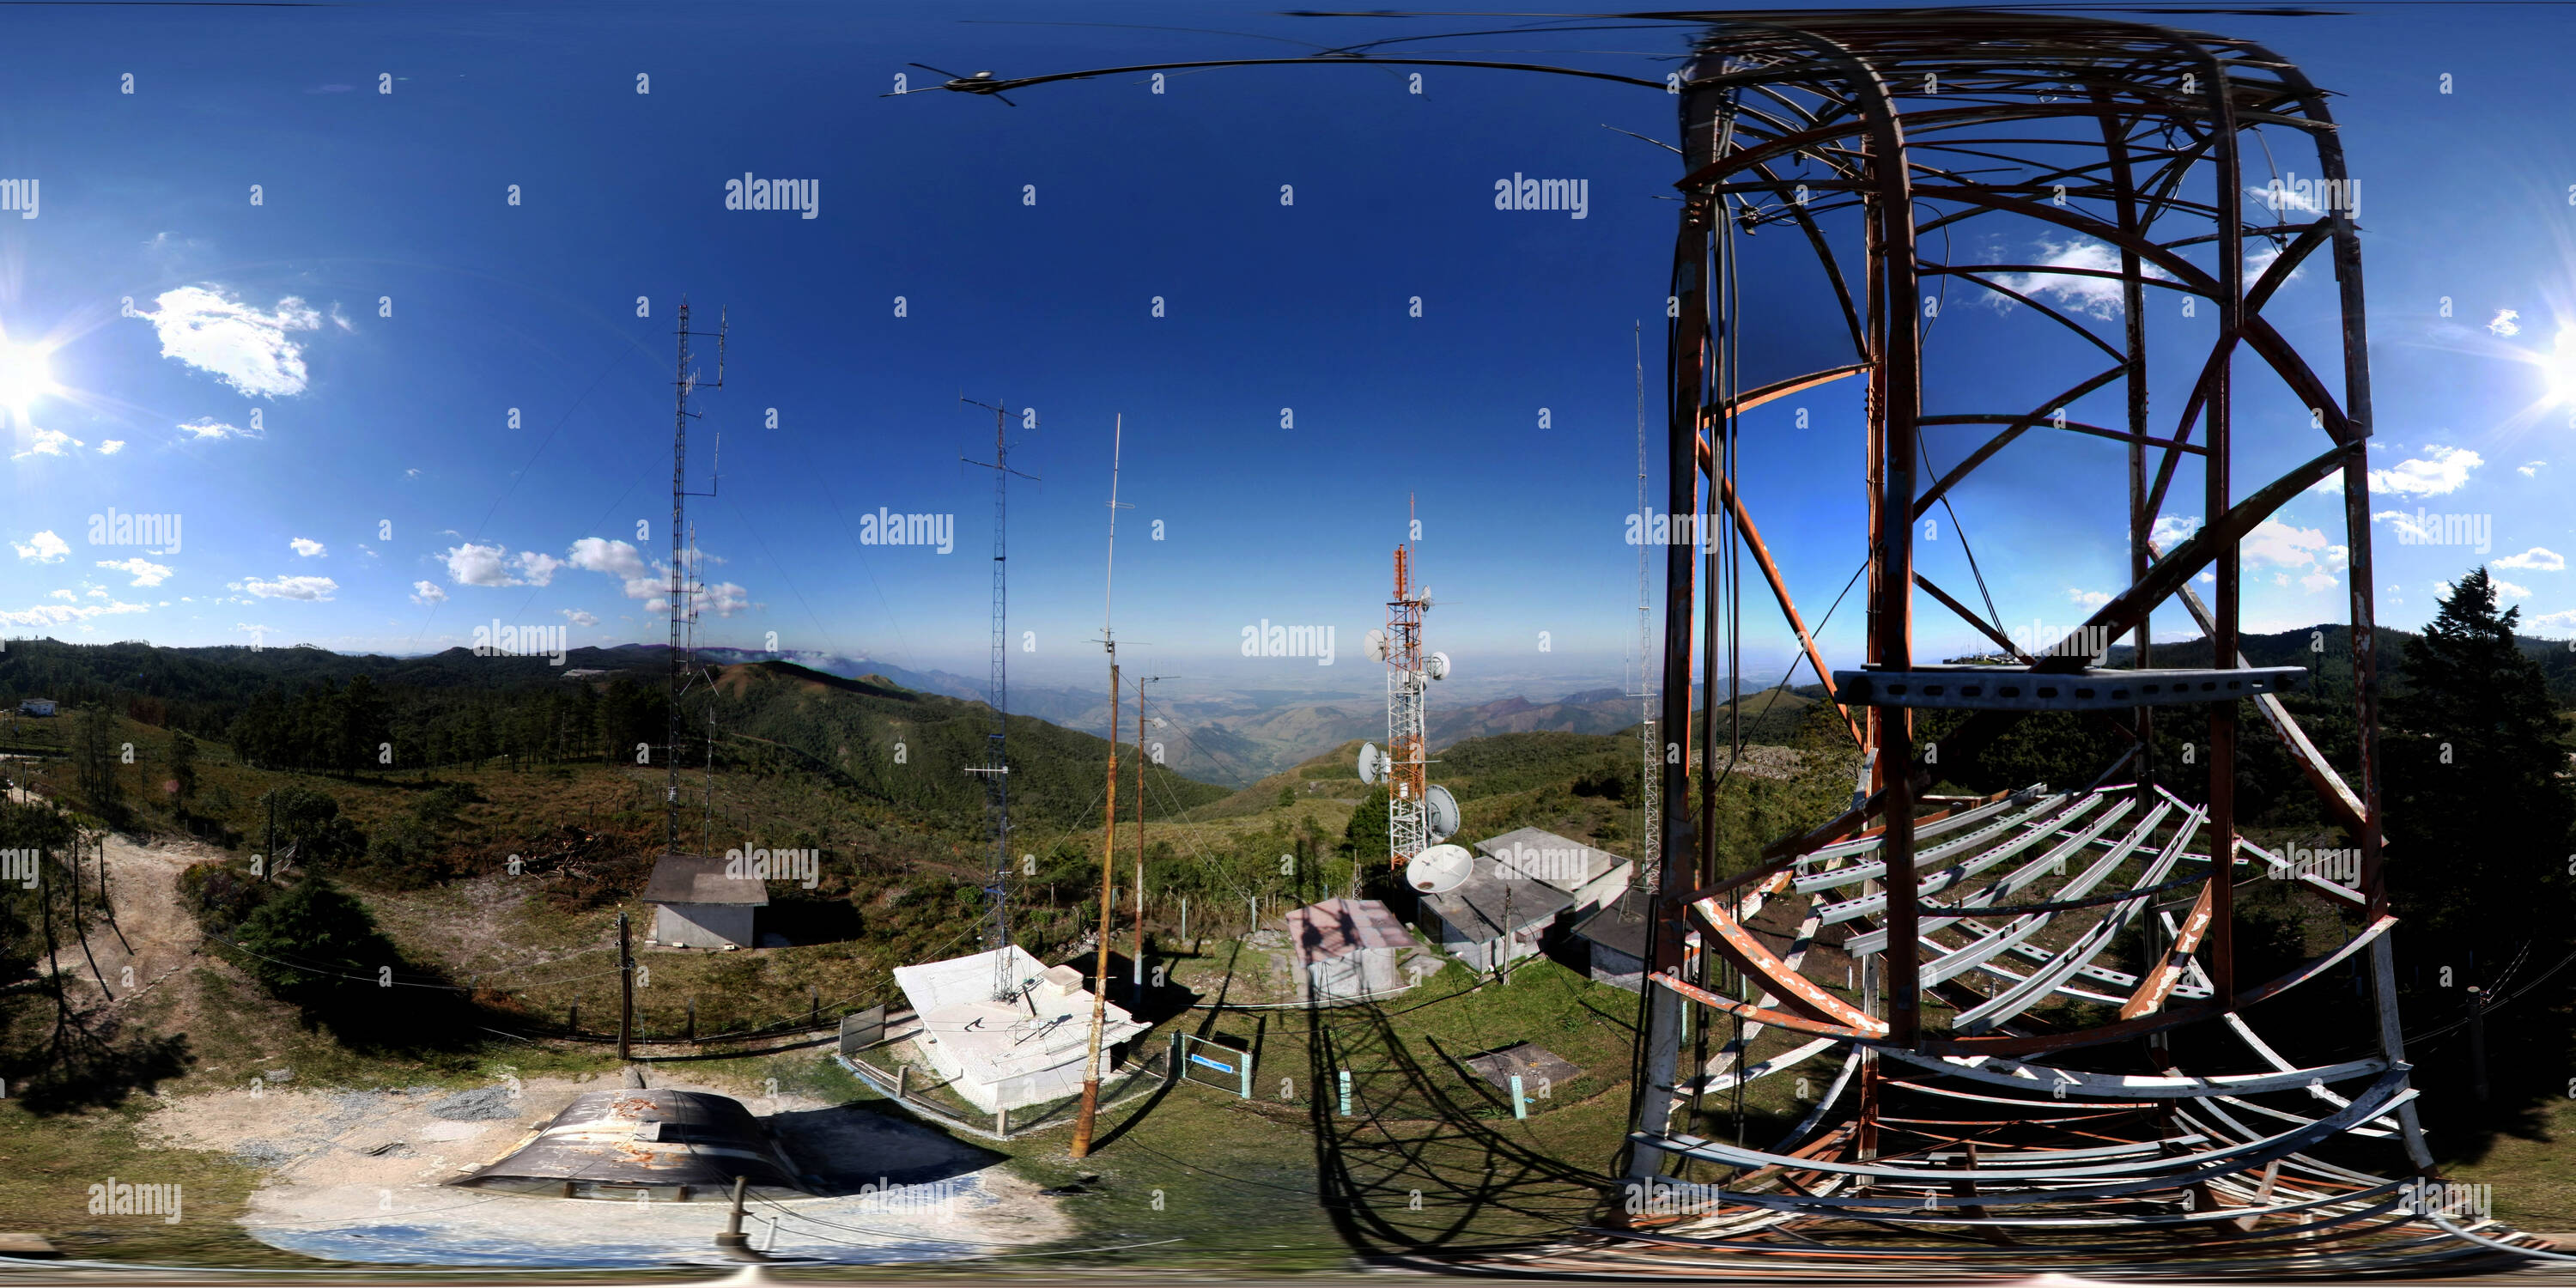 360 Grad Panorama Ansicht von Estação de rádio PY2 KES-CRASEMA - Clube de Radioamadores da Serra da Mantiqueira tun